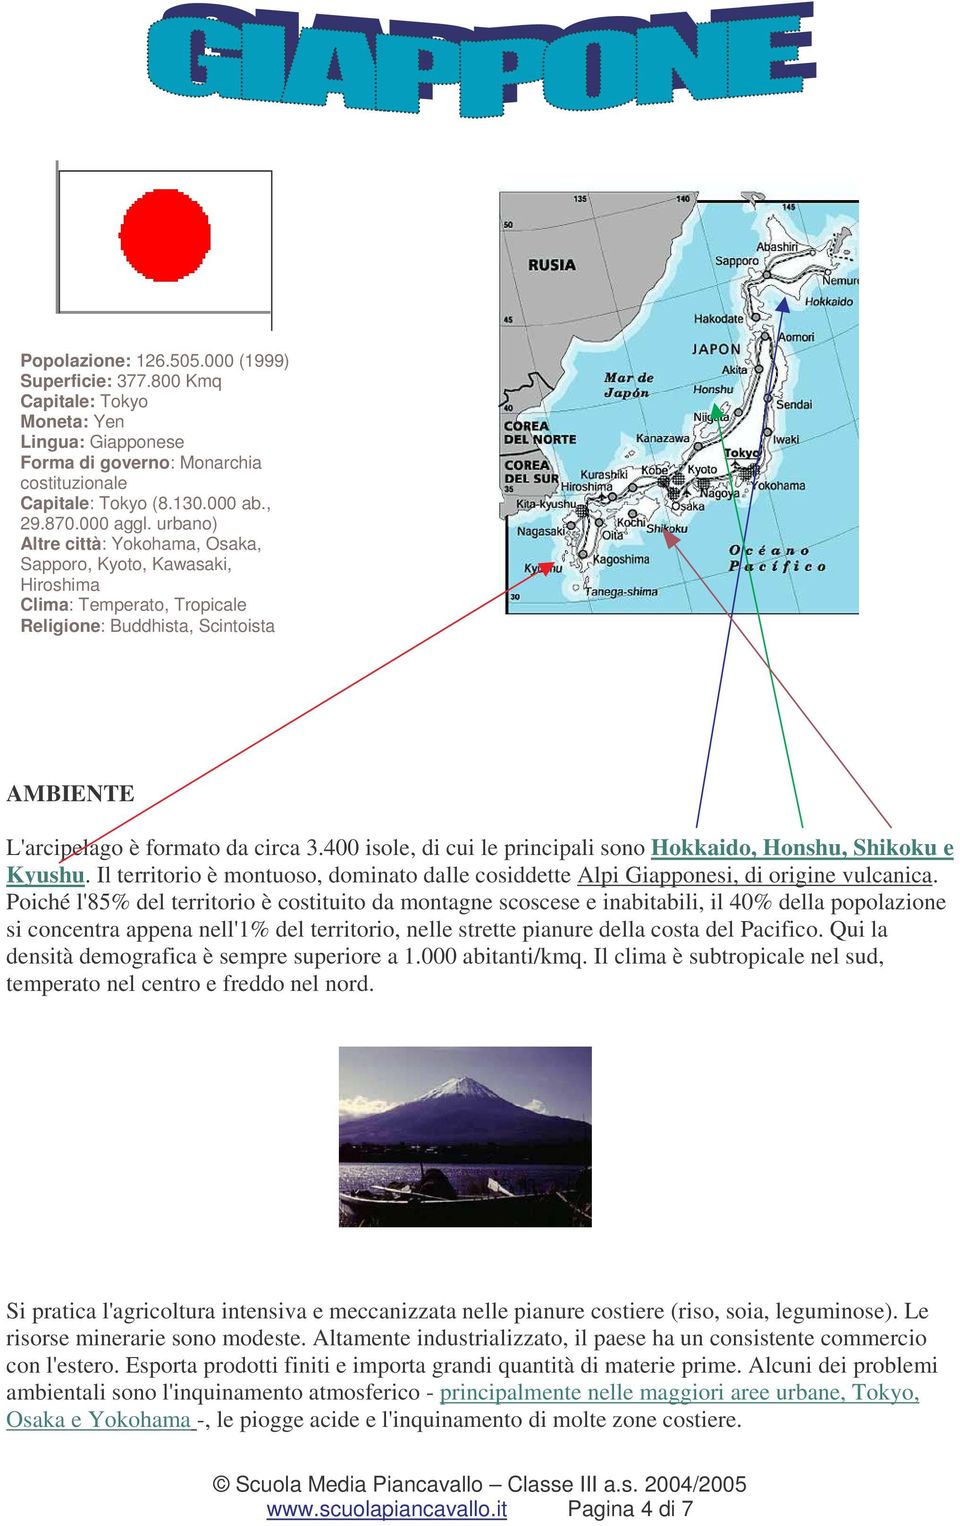 400 isole, di cui le principali sono Hokkaido, Honshu, Shikoku e Kyushu. Il territorio è montuoso, dominato dalle cosiddette Alpi Giapponesi, di origine vulcanica.